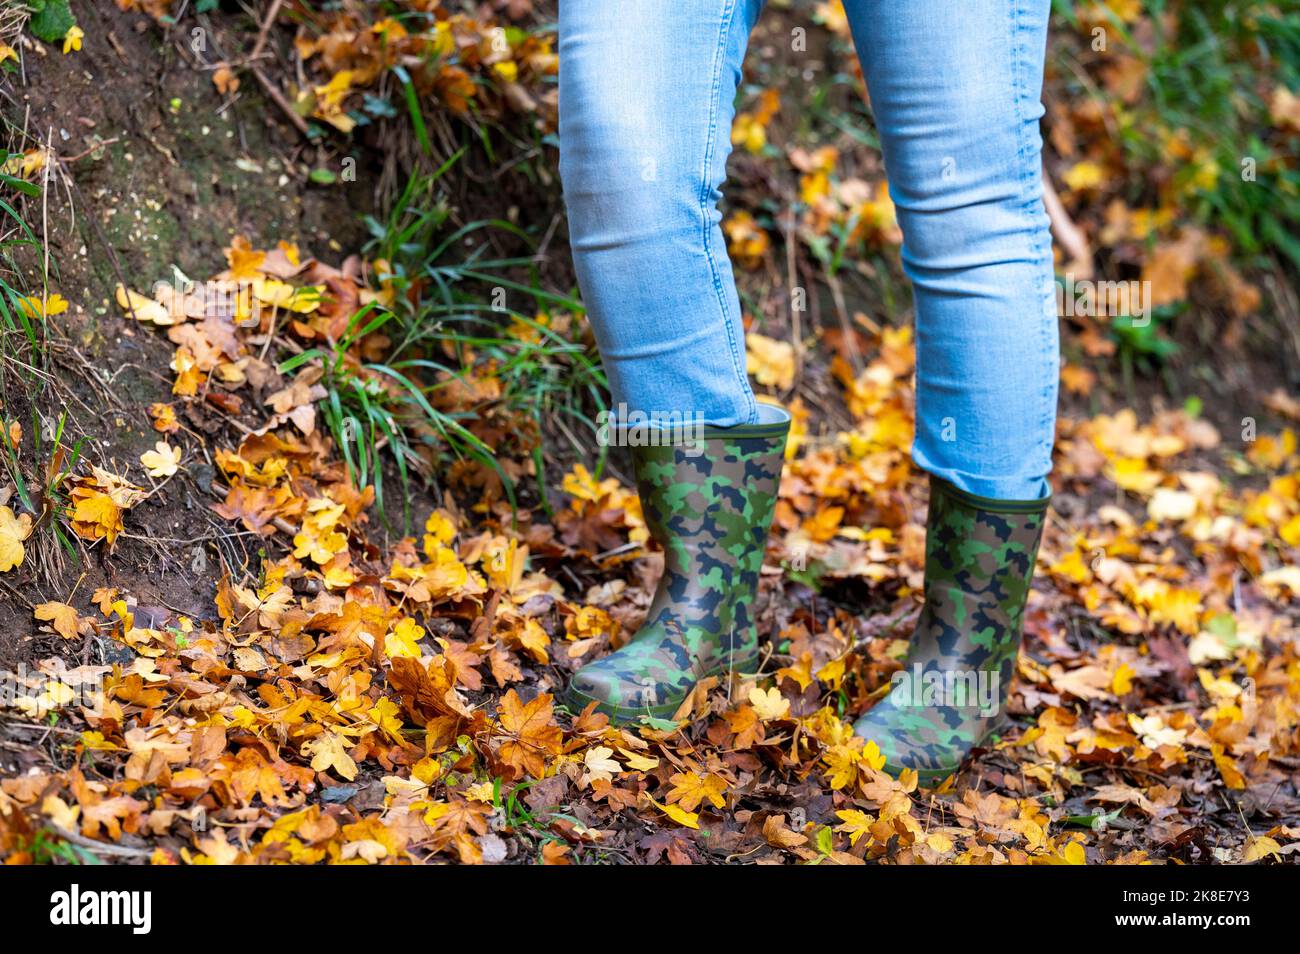 Femme portant des bottes de camouflage wellington marchant à travers l'automne quitte l'Angleterre Royaume-Uni Banque D'Images